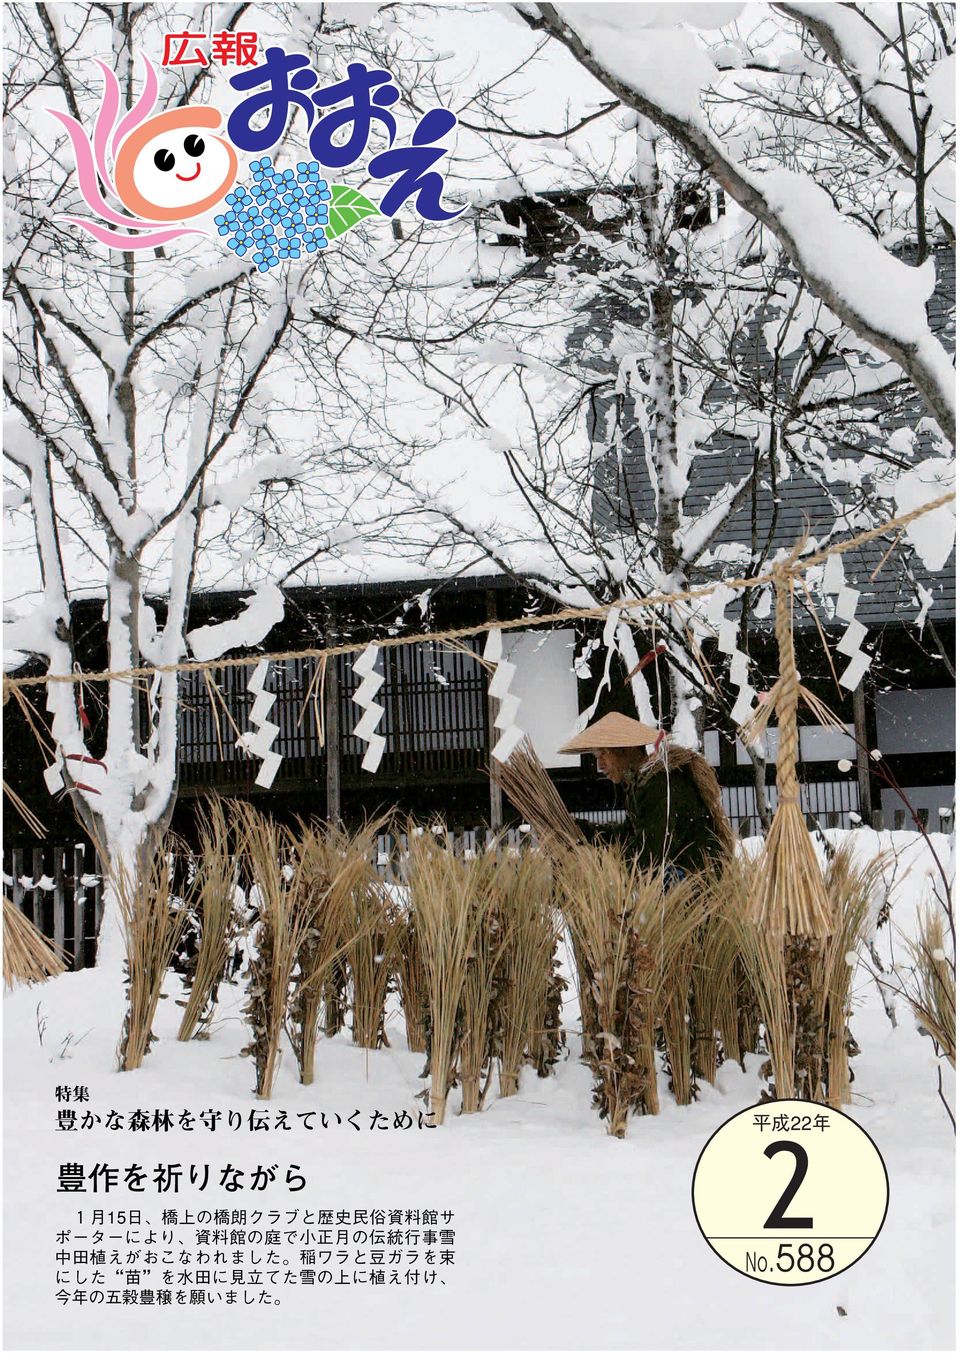 資料館の庭で小正月の伝統行事雪 中田植えがおこなわれました